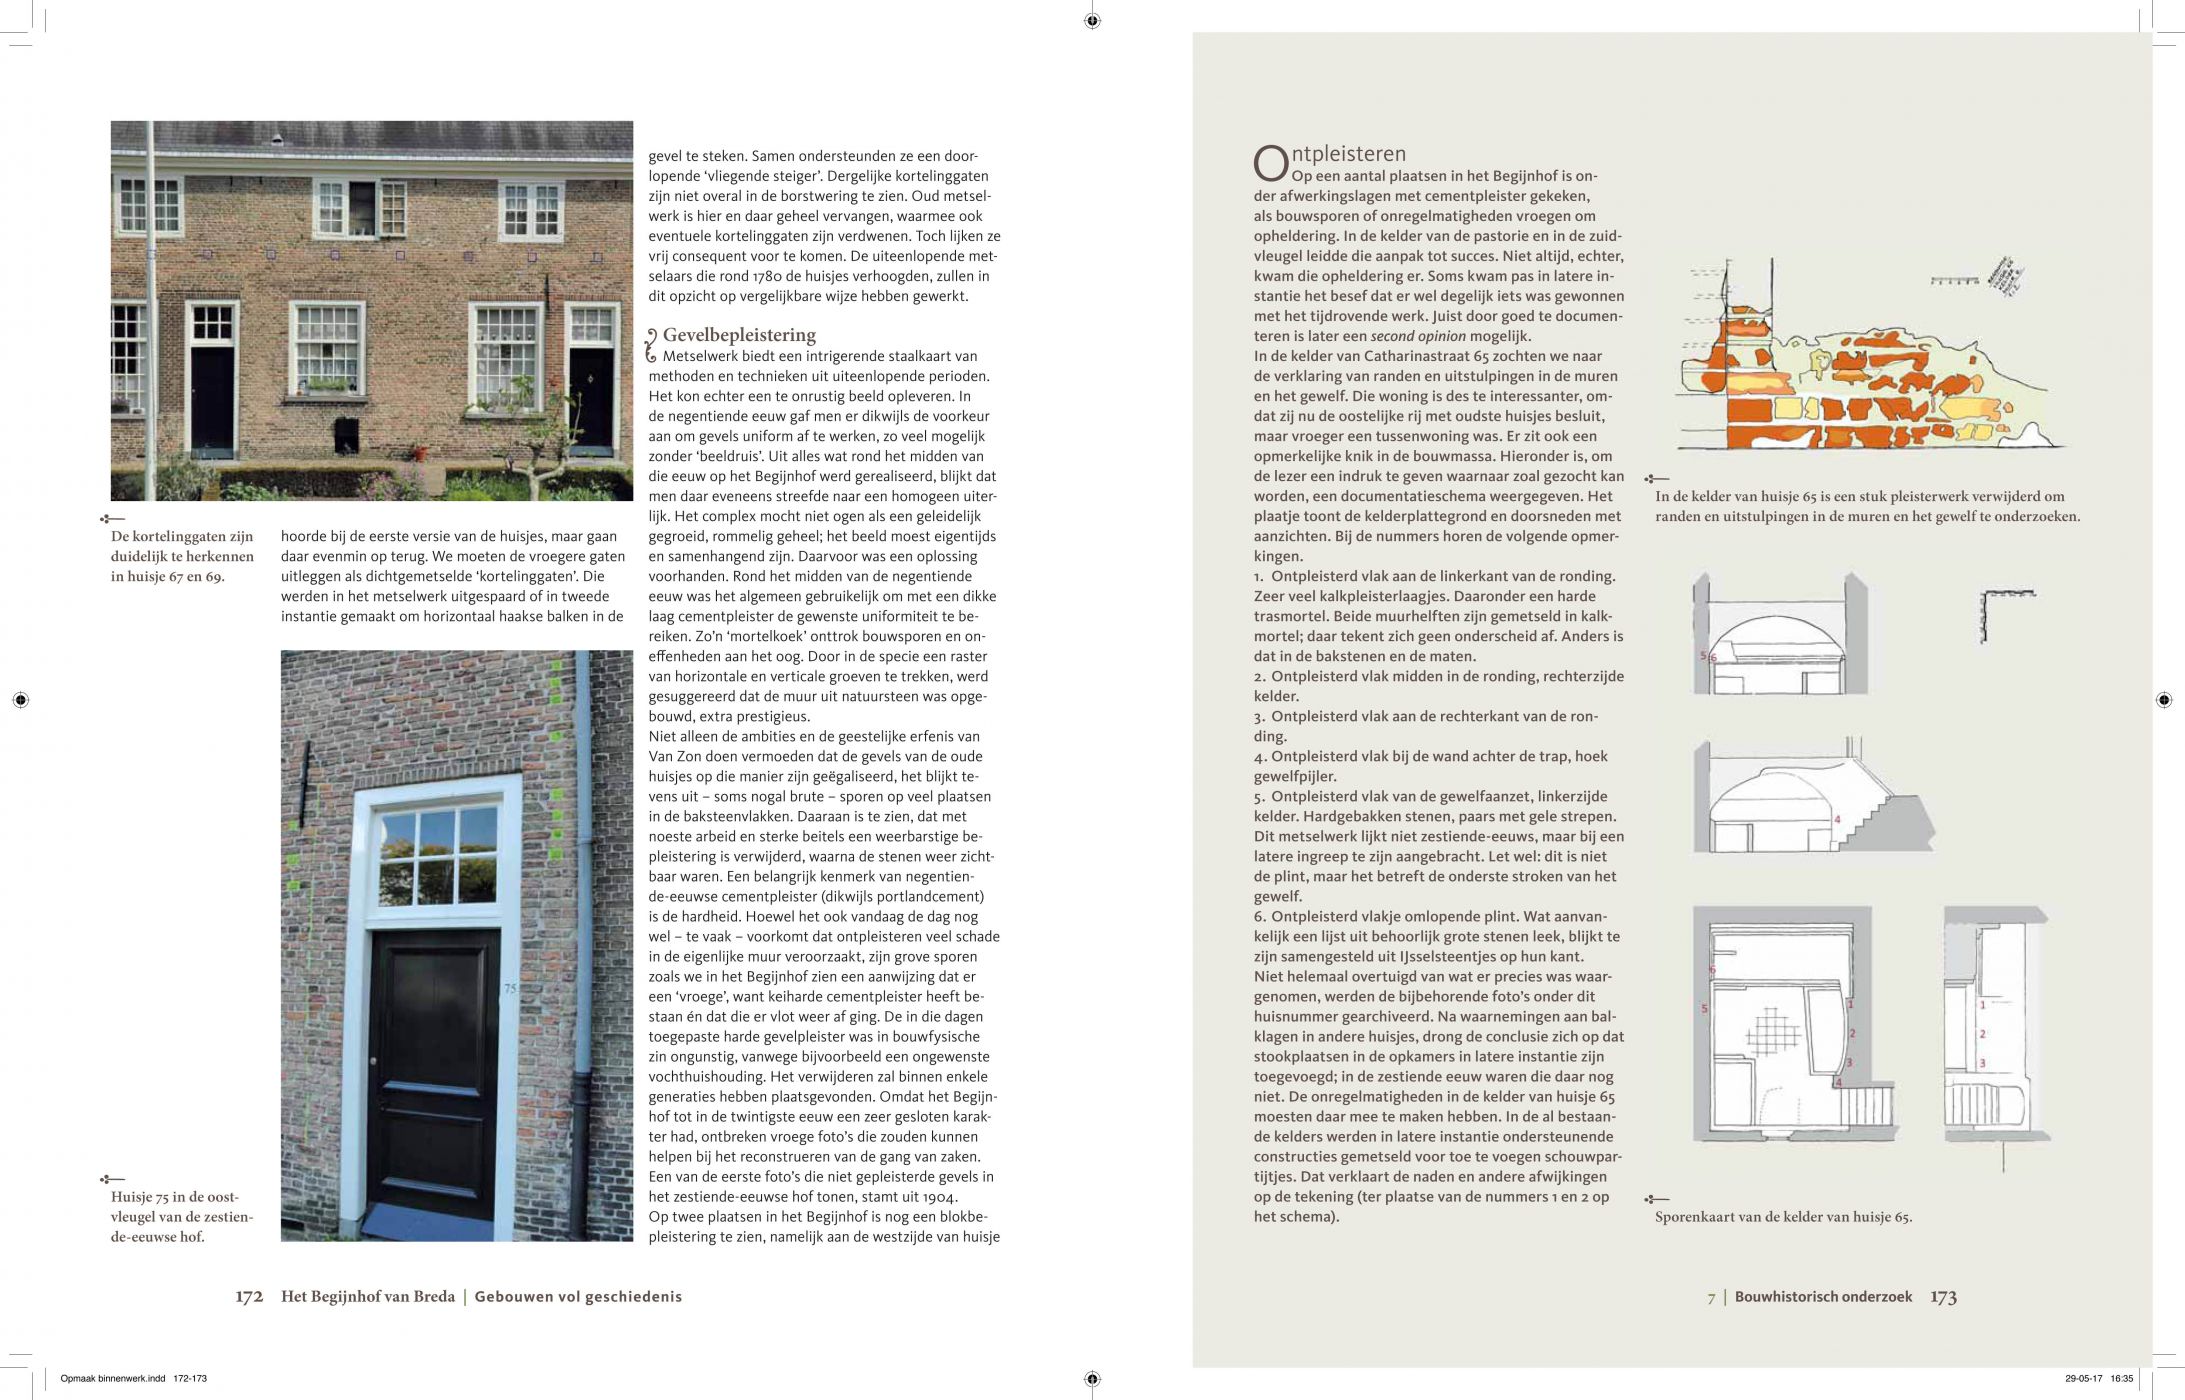 Inkijkexemplaar van het boek: <em>Het Begijnhof van Breda. Gebouwen vol geschiedenis</em> - © Uitgeverij Matrijs